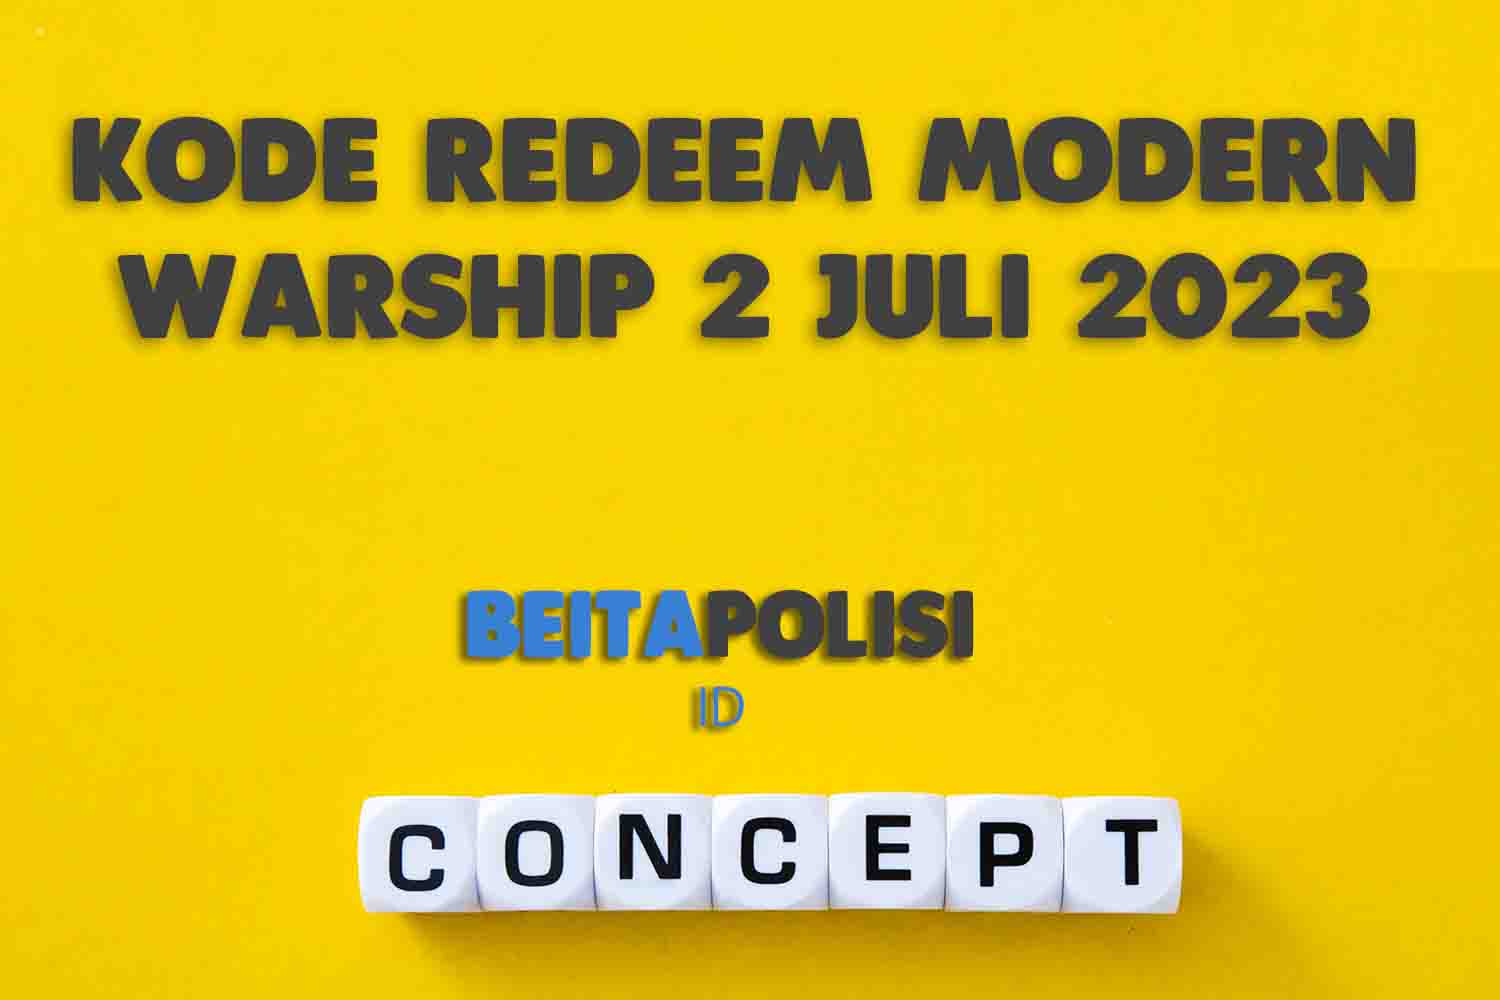 Kode Redeem Modern Warship 2 Juli 2023 Yang Masih Aktif